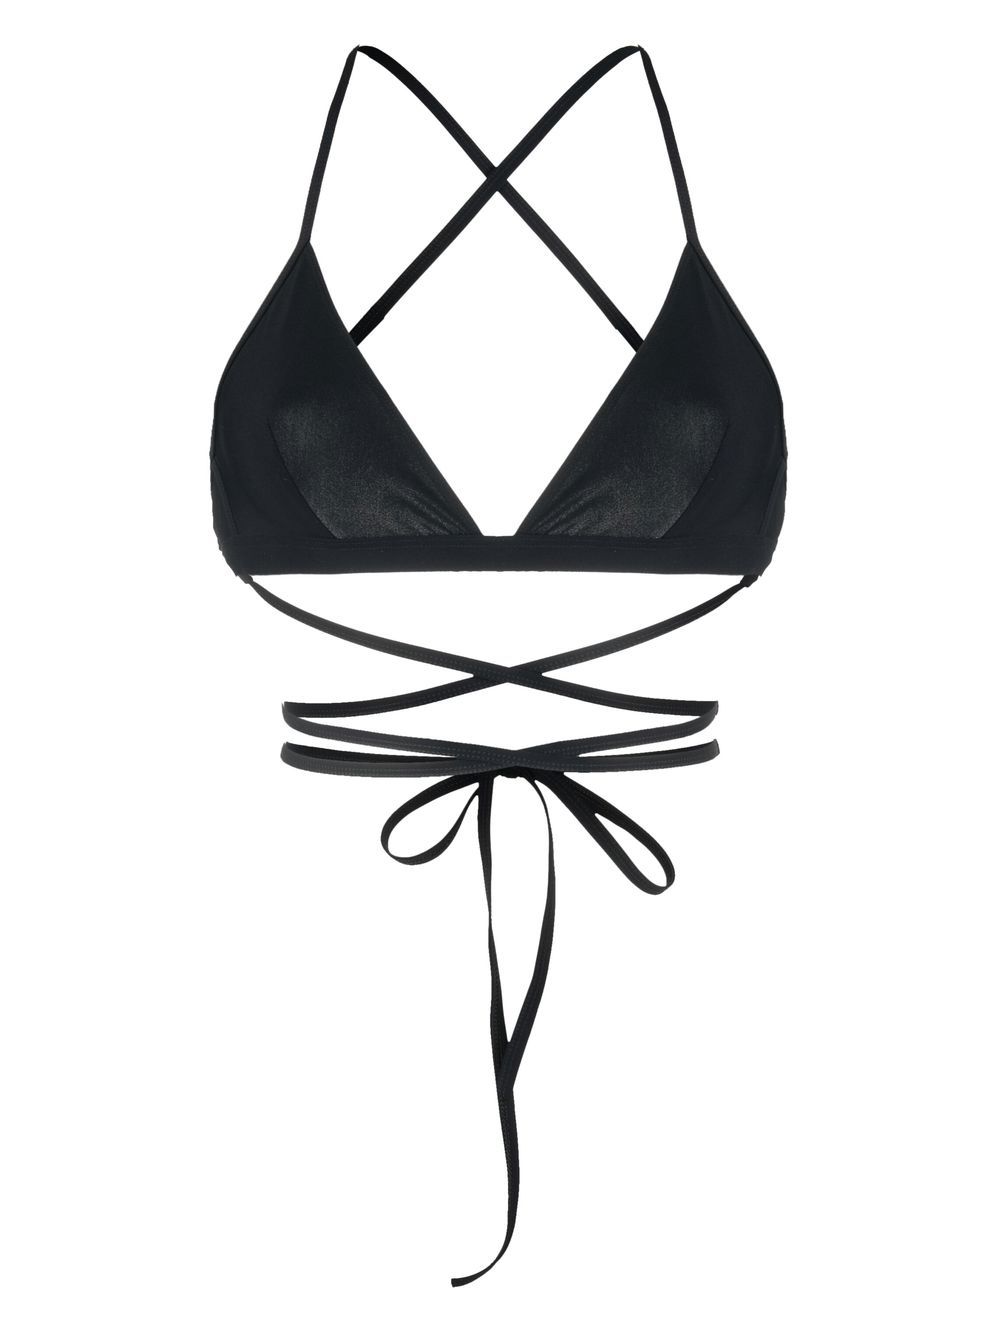 Solange crossover-strap bikini top